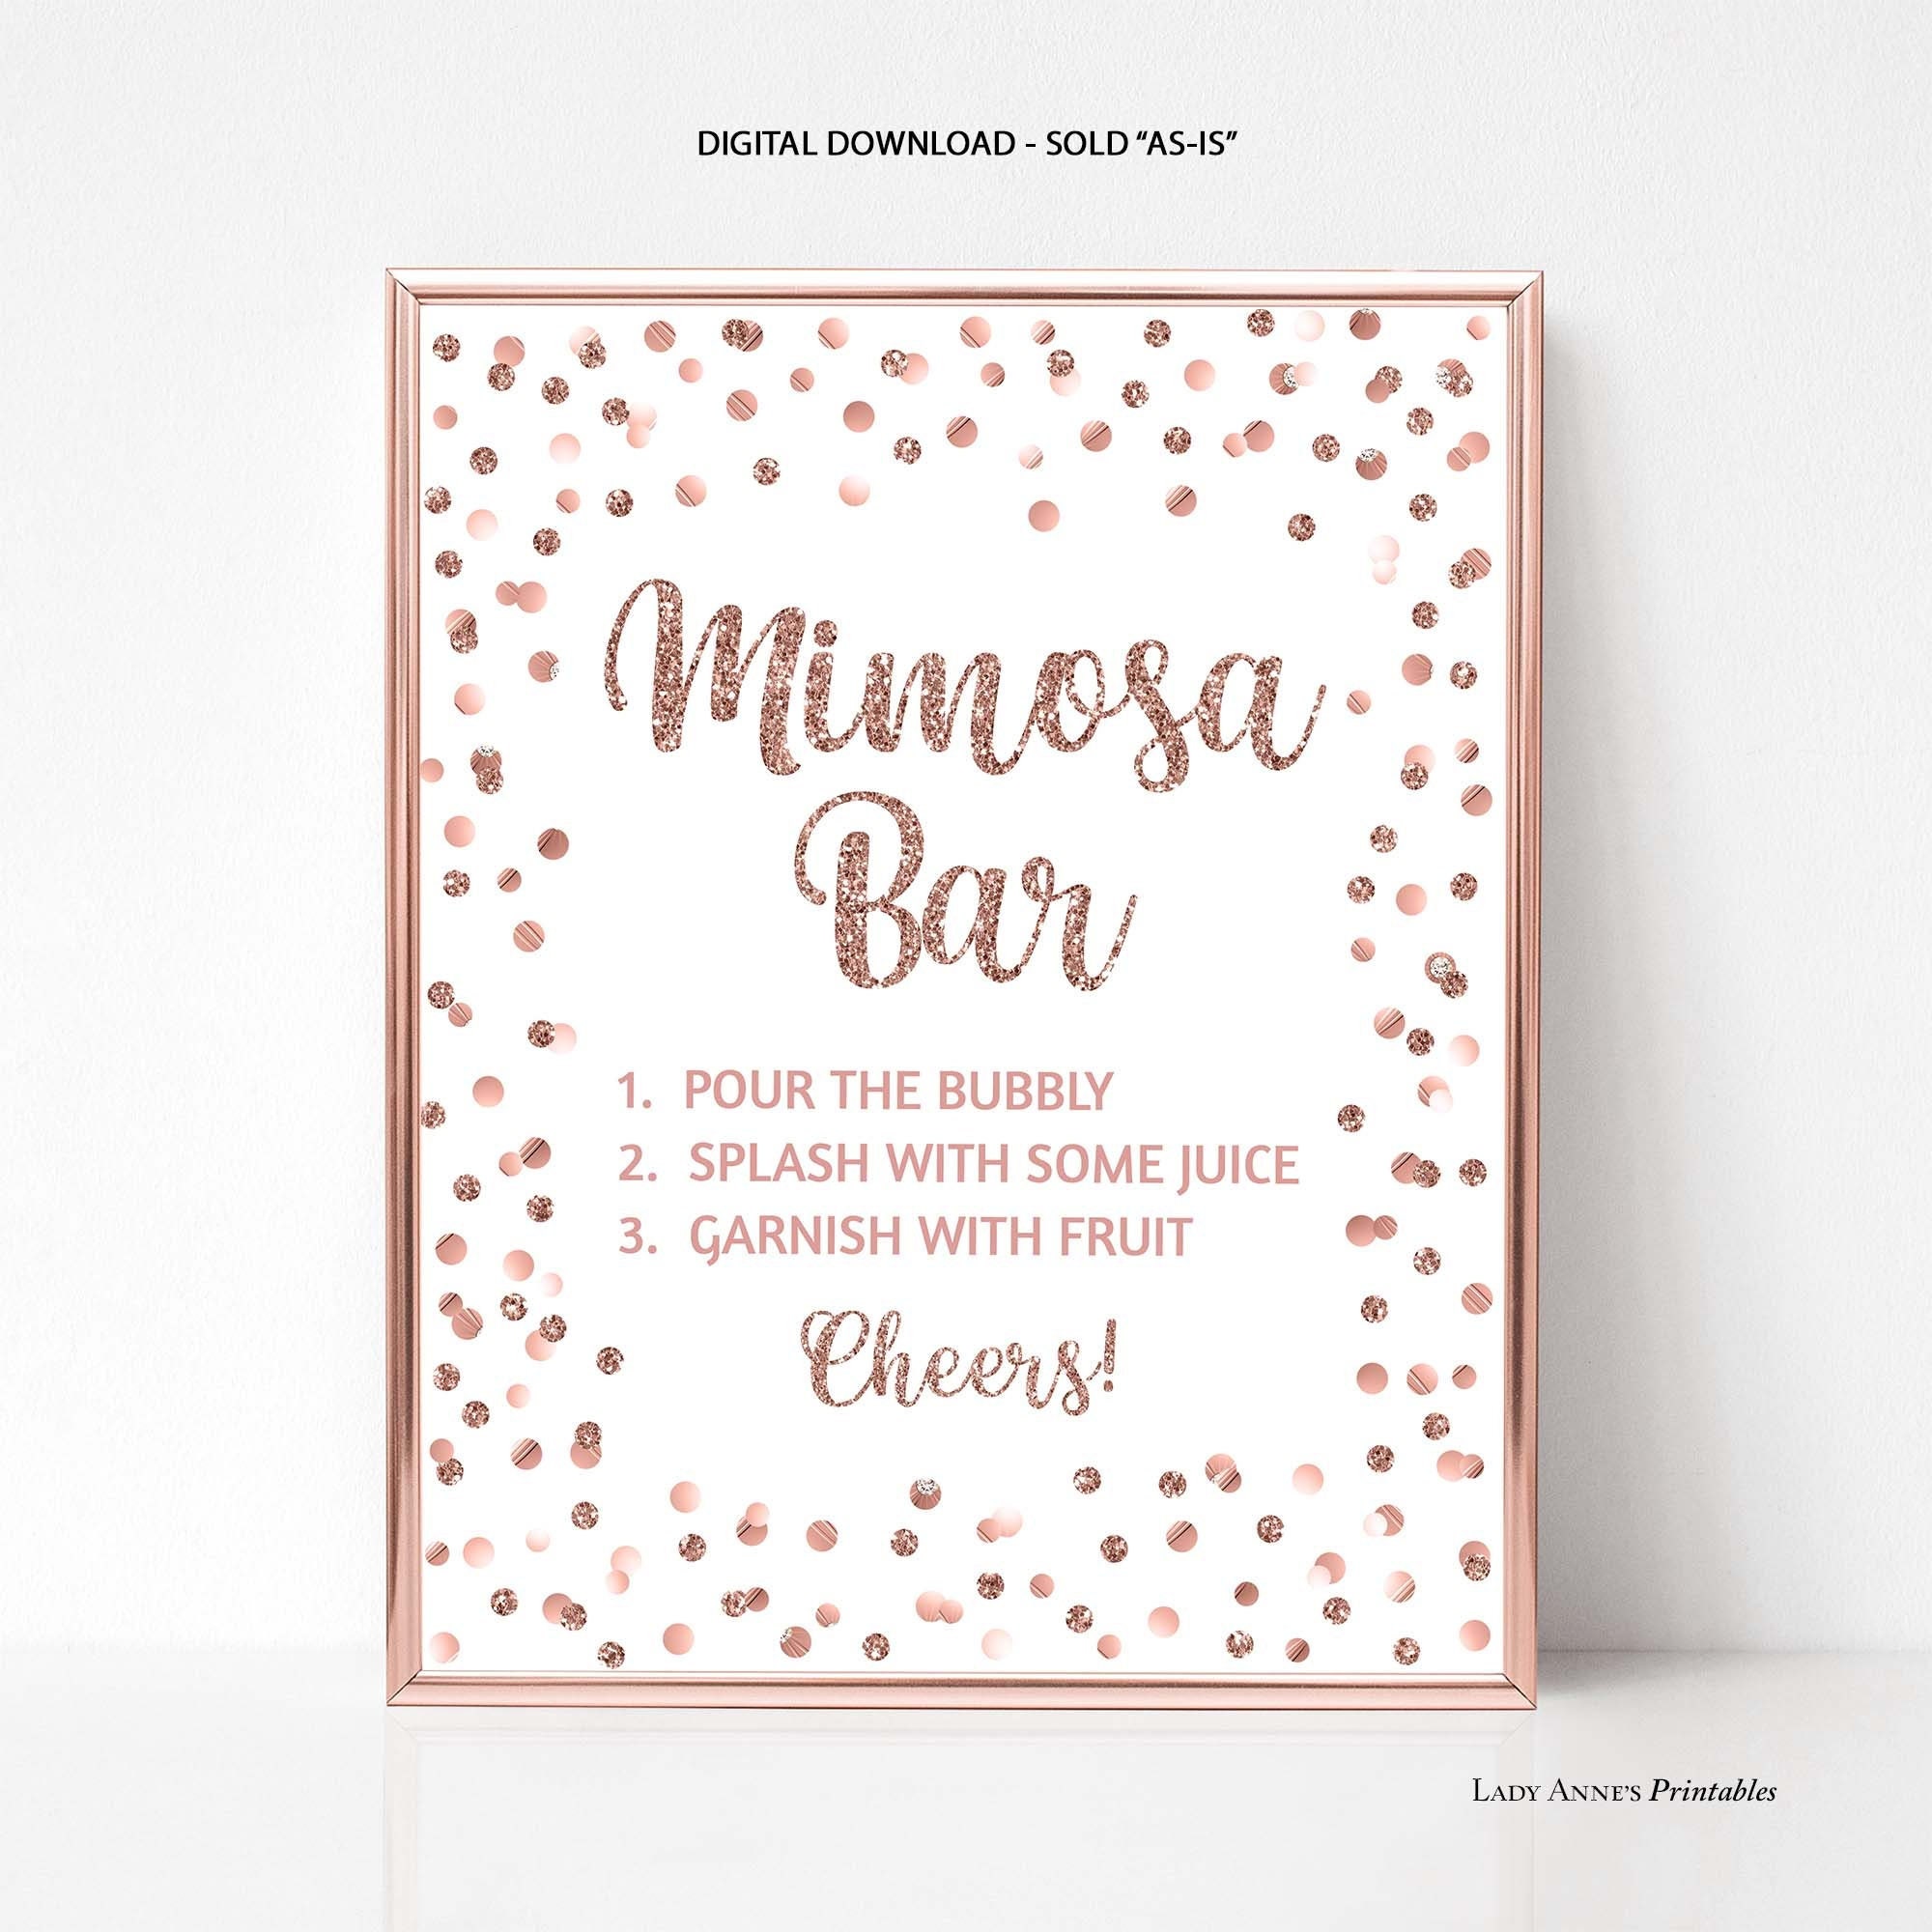 Momosa Bar Supplies Kit - Floral Momosa Bar Sign - Blush Pink Table Place Cards - Bridal Shower, Graduation Party, Bubbly Bar, Mimosa Bar, Birthday